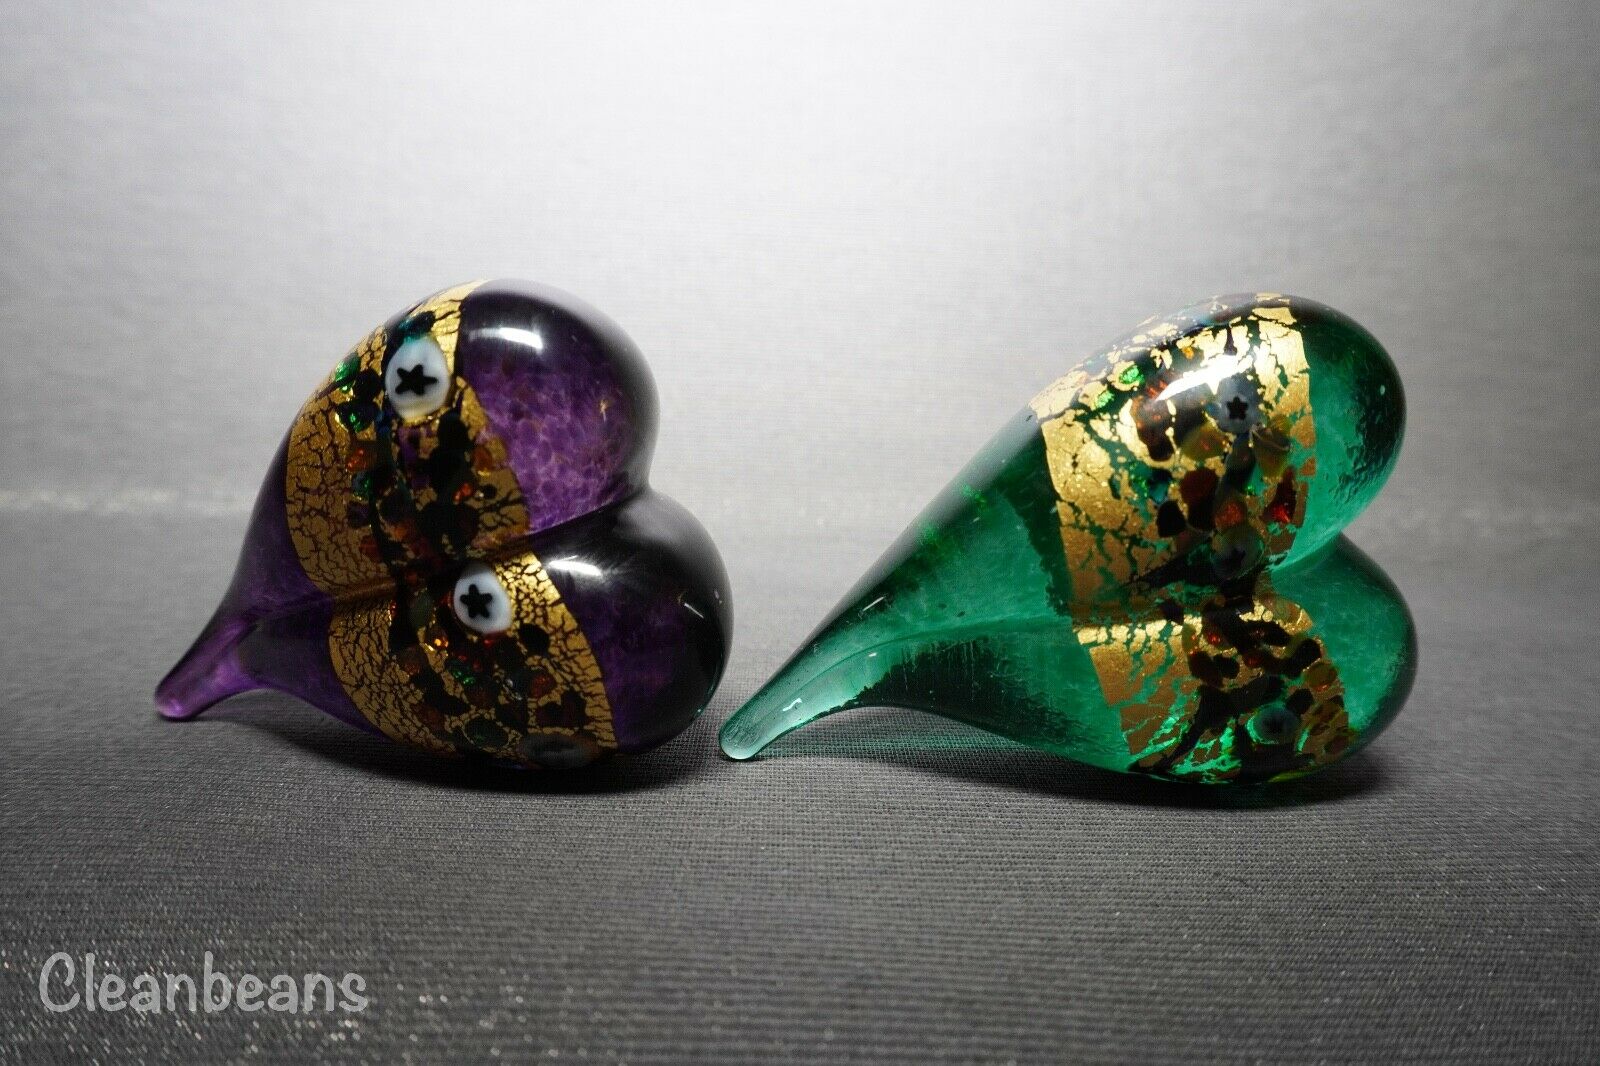 Robert Held Handmade Art Glass Iridescent Heart Shaped Paperweights Signed